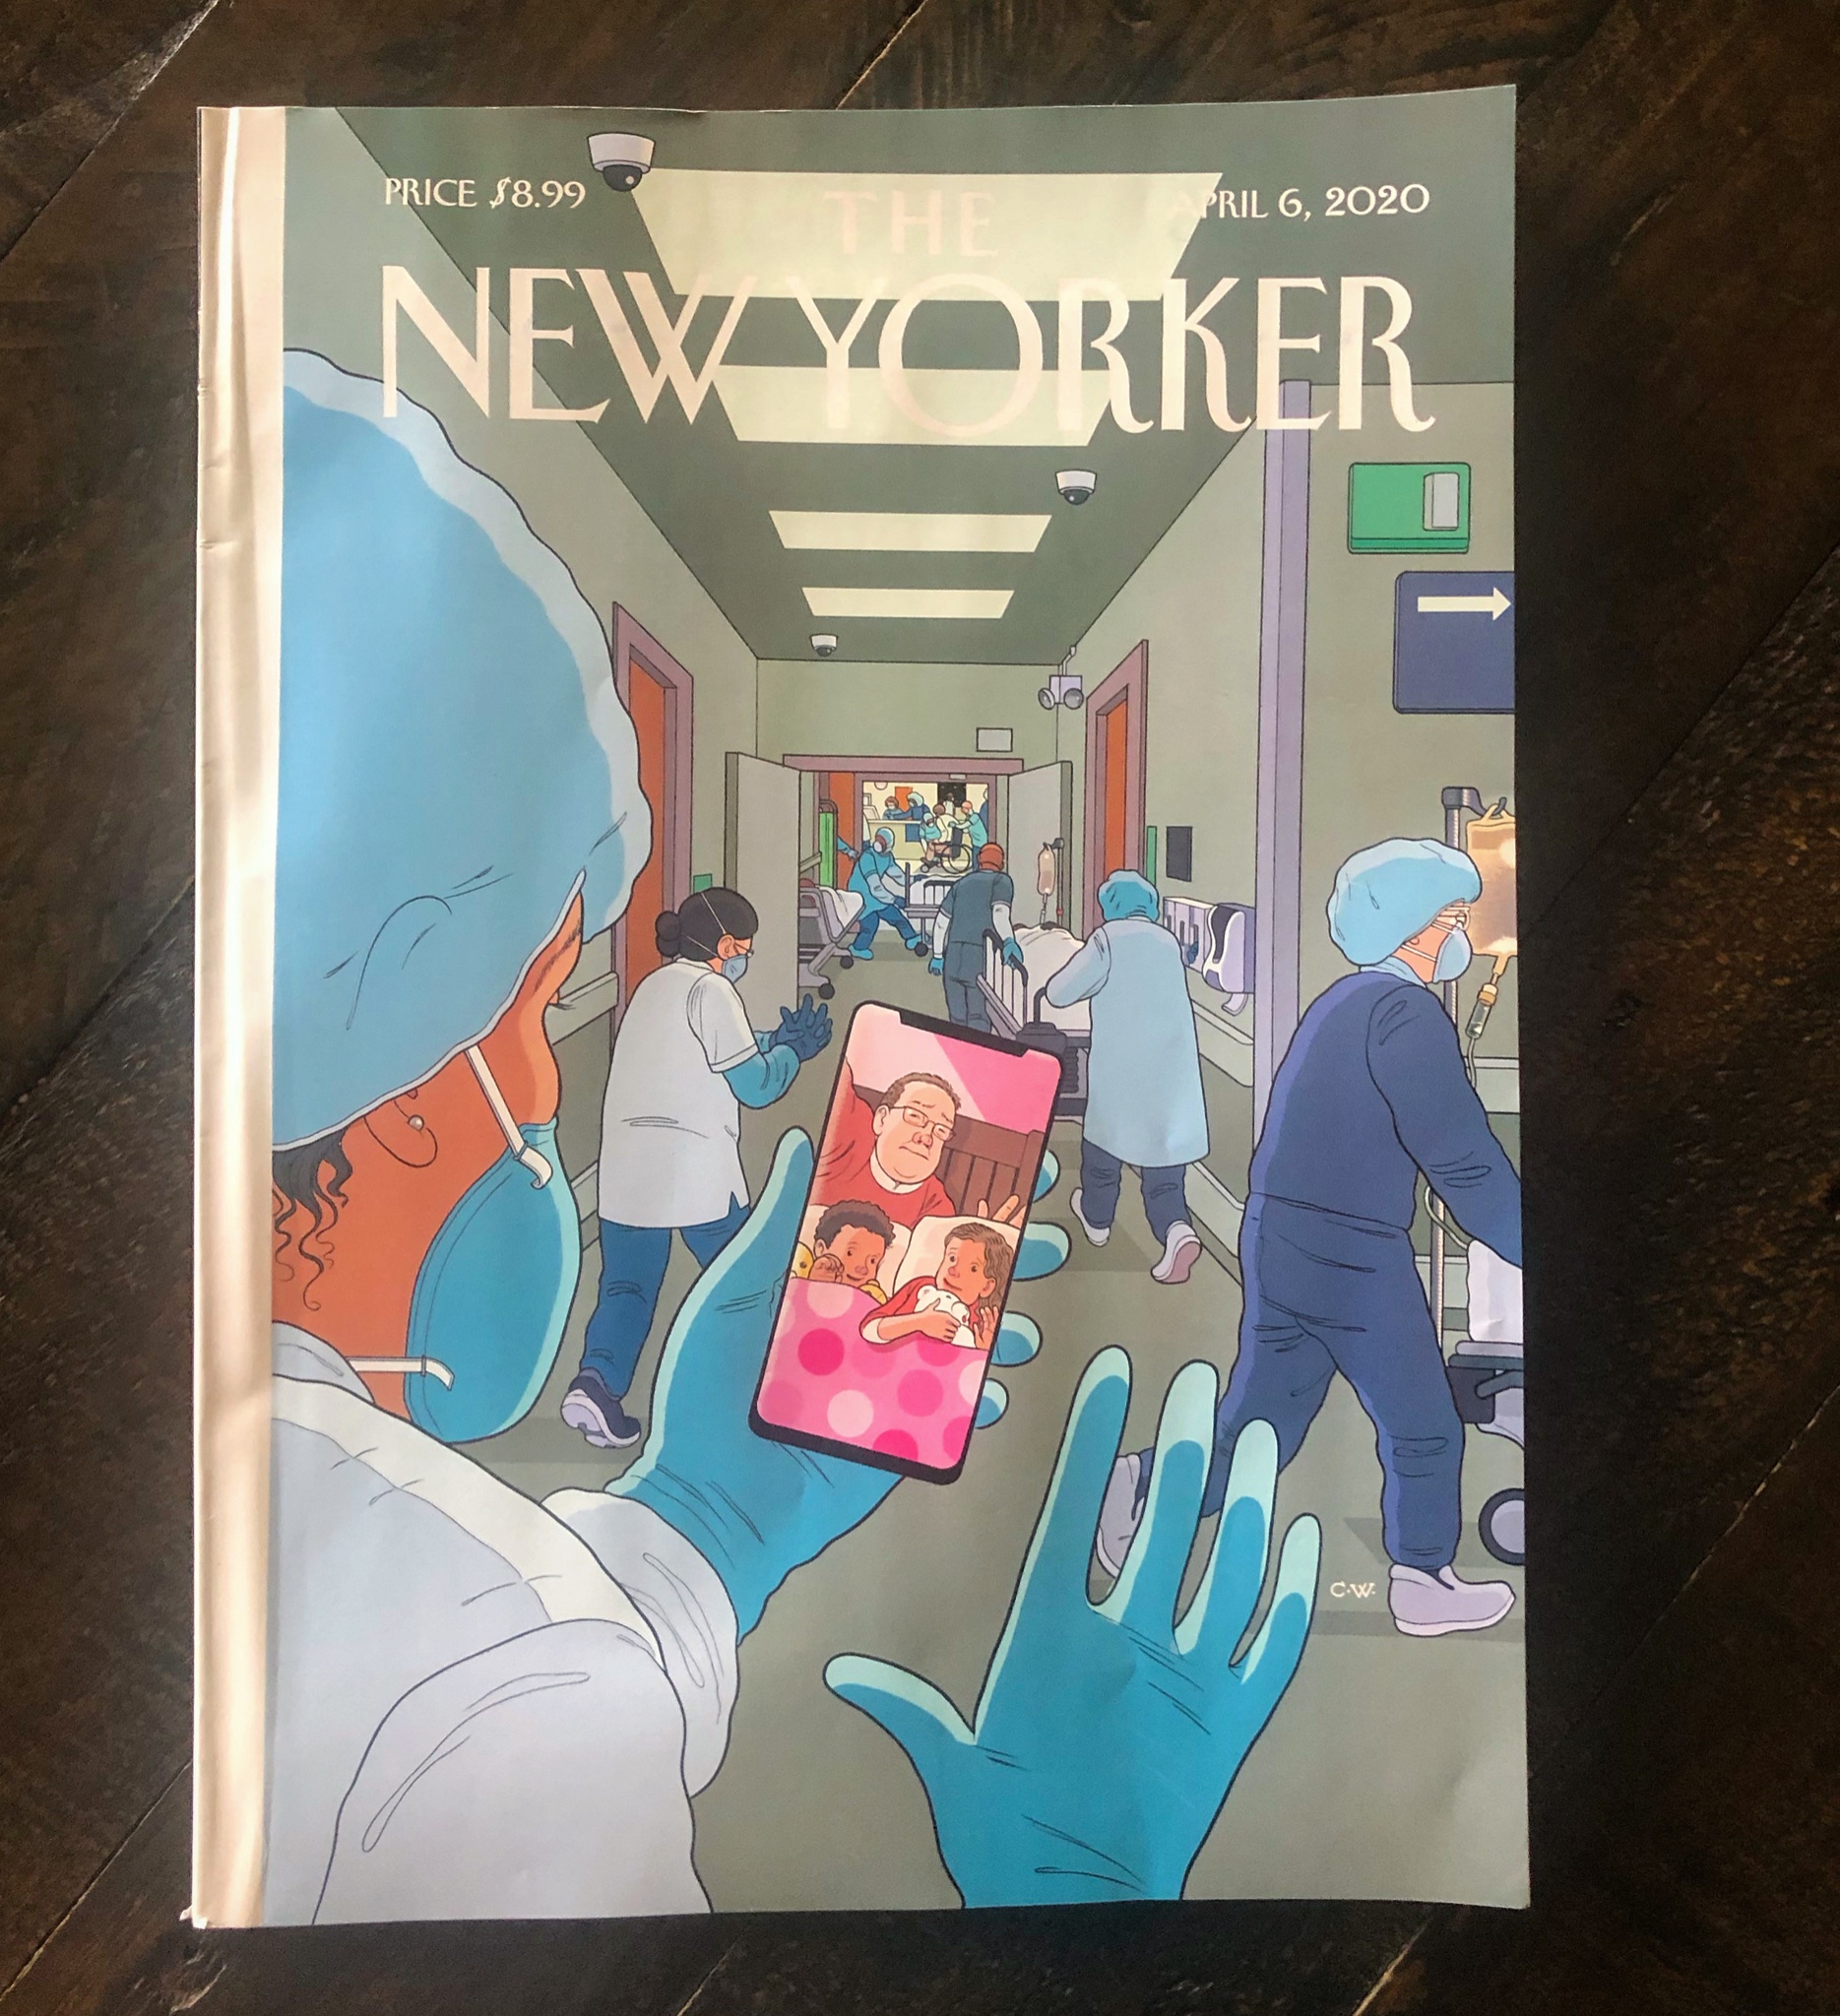 新元良一 今週のニューヨーカー誌の表紙イラスト 同誌の表紙にクリス ウェア の絵が登場するのは久しぶりでは いま市内の病院の様子は 日本でも報道されていると思います 病院スタッフももちろん我々と同じ人間 早くそれぞれの